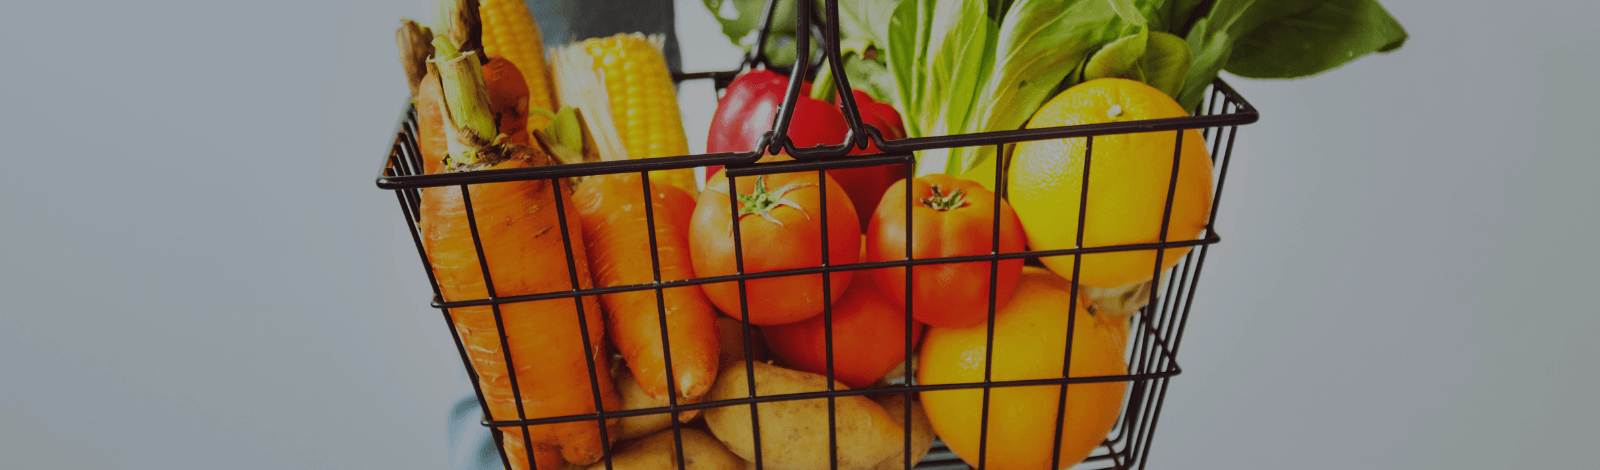 Foto de una canasta hecha de alambre negra y llena de frutas y verduras. El fondo es gris ligero. La canasta contiene zanahorias anaranjadas, maíz amarillo, jitomates rojas, papas morenas, lechuga verde, y naranjas.